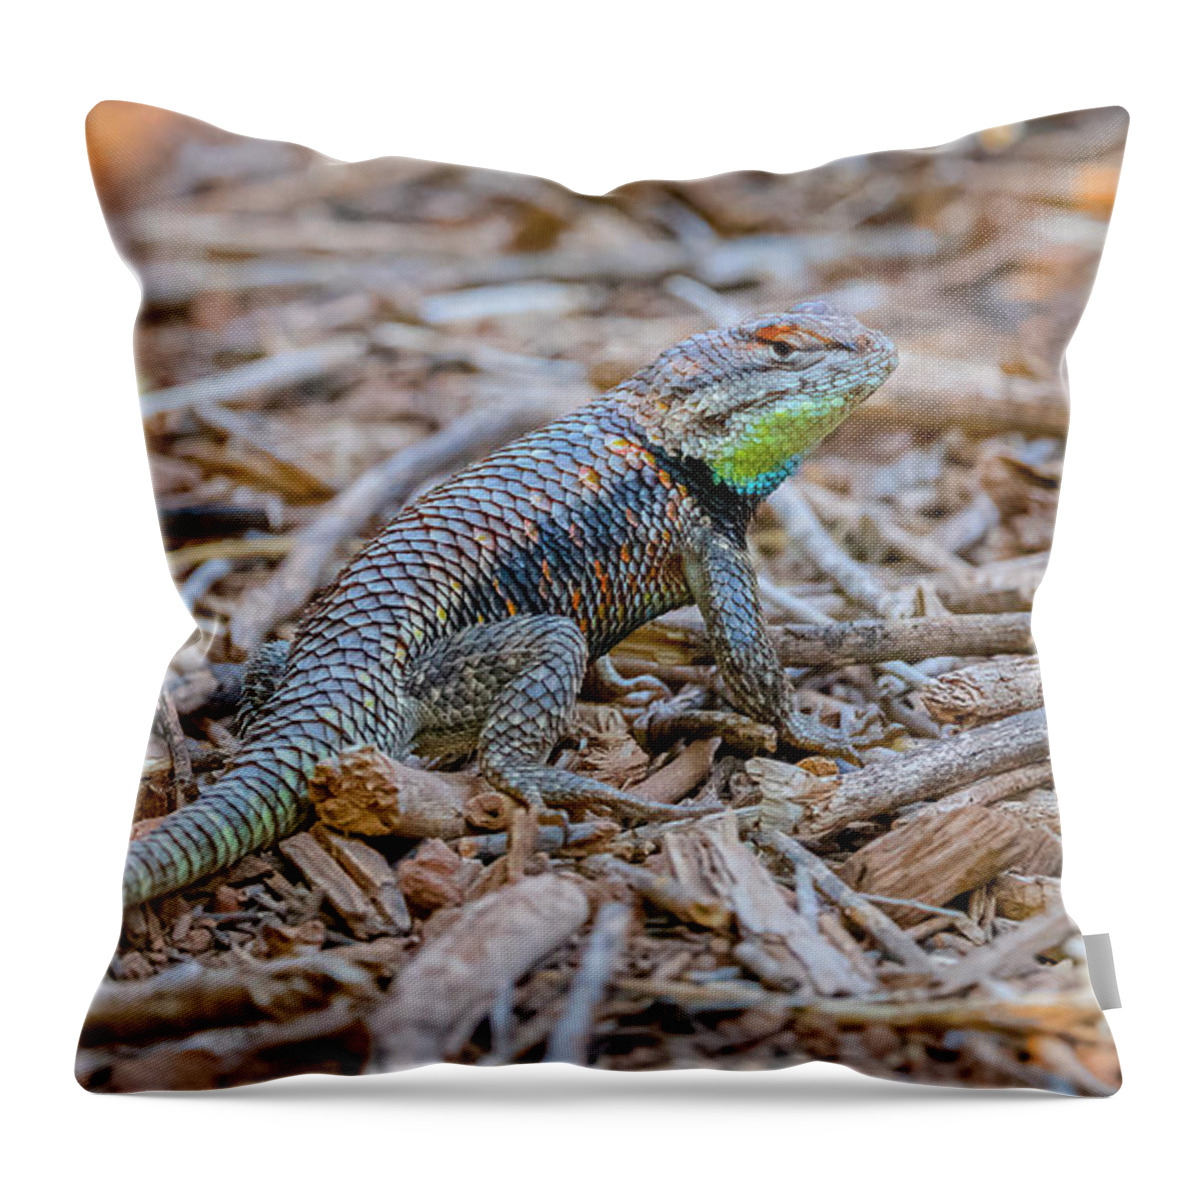 Desert Spiny Lizard Throw Pillow featuring the photograph Desert Spiny Lizard by Morris Finkelstein